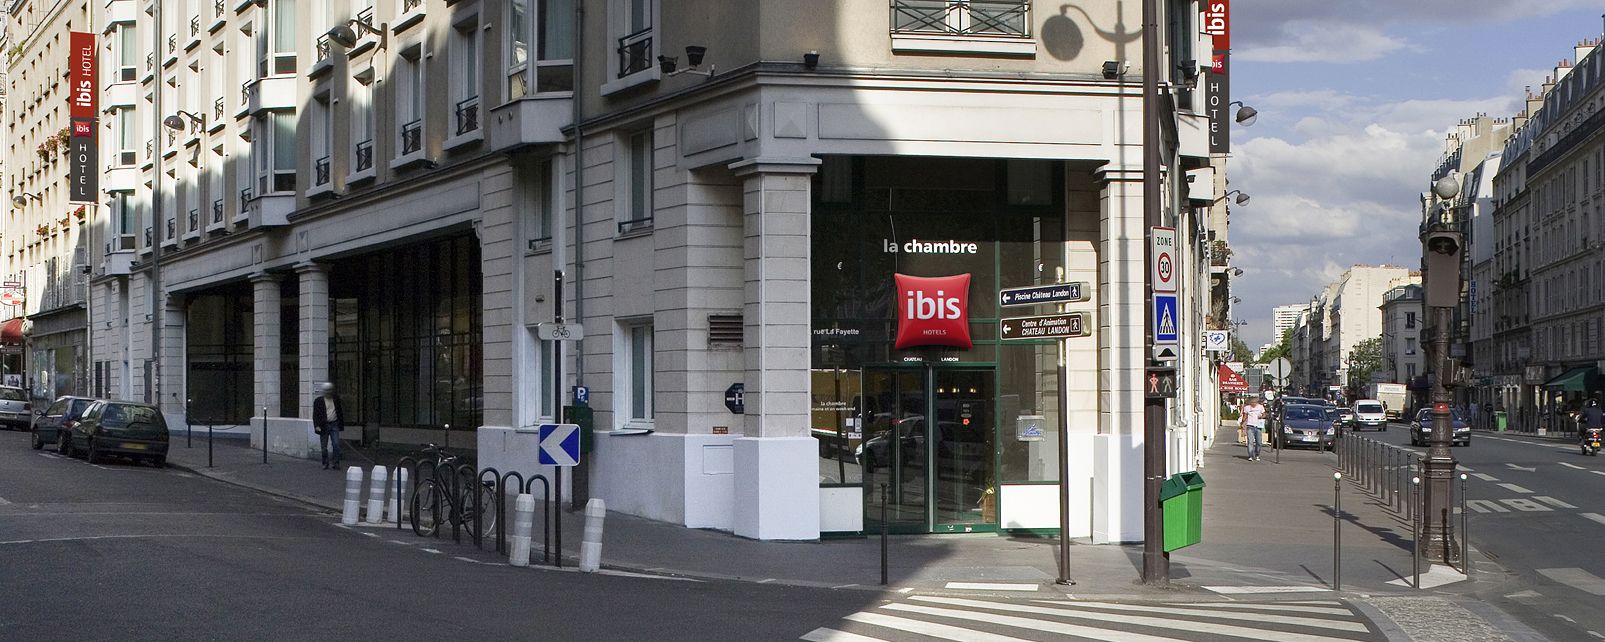 Hotel Ibis Paris Gare du Nord Chateau Landon